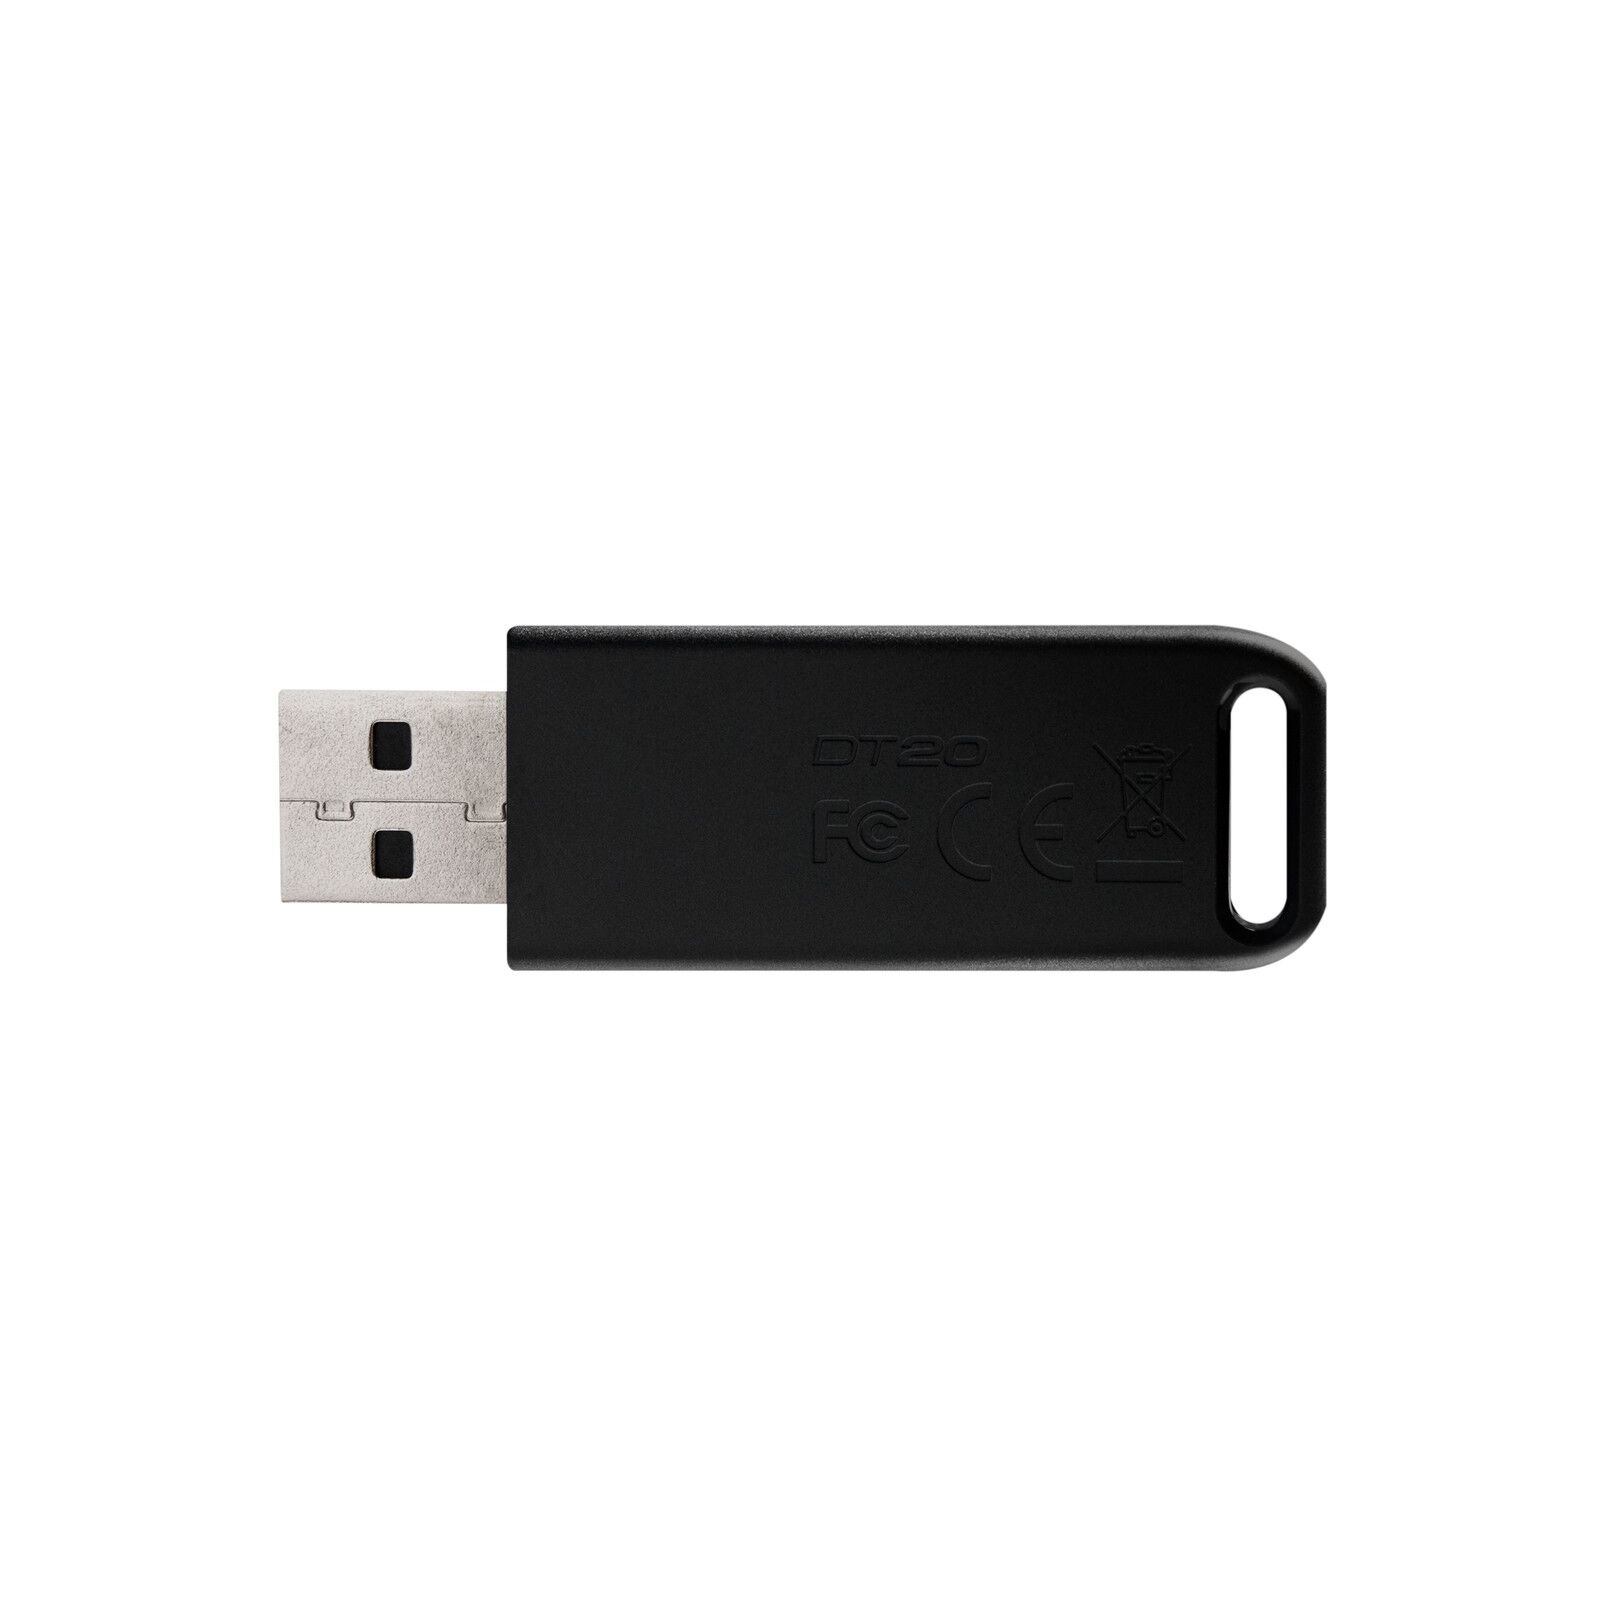 USB флеш накопичувач Kingston 64GB DataTraveler 20 USB 2.0 (DT20/64GB) зображення 3